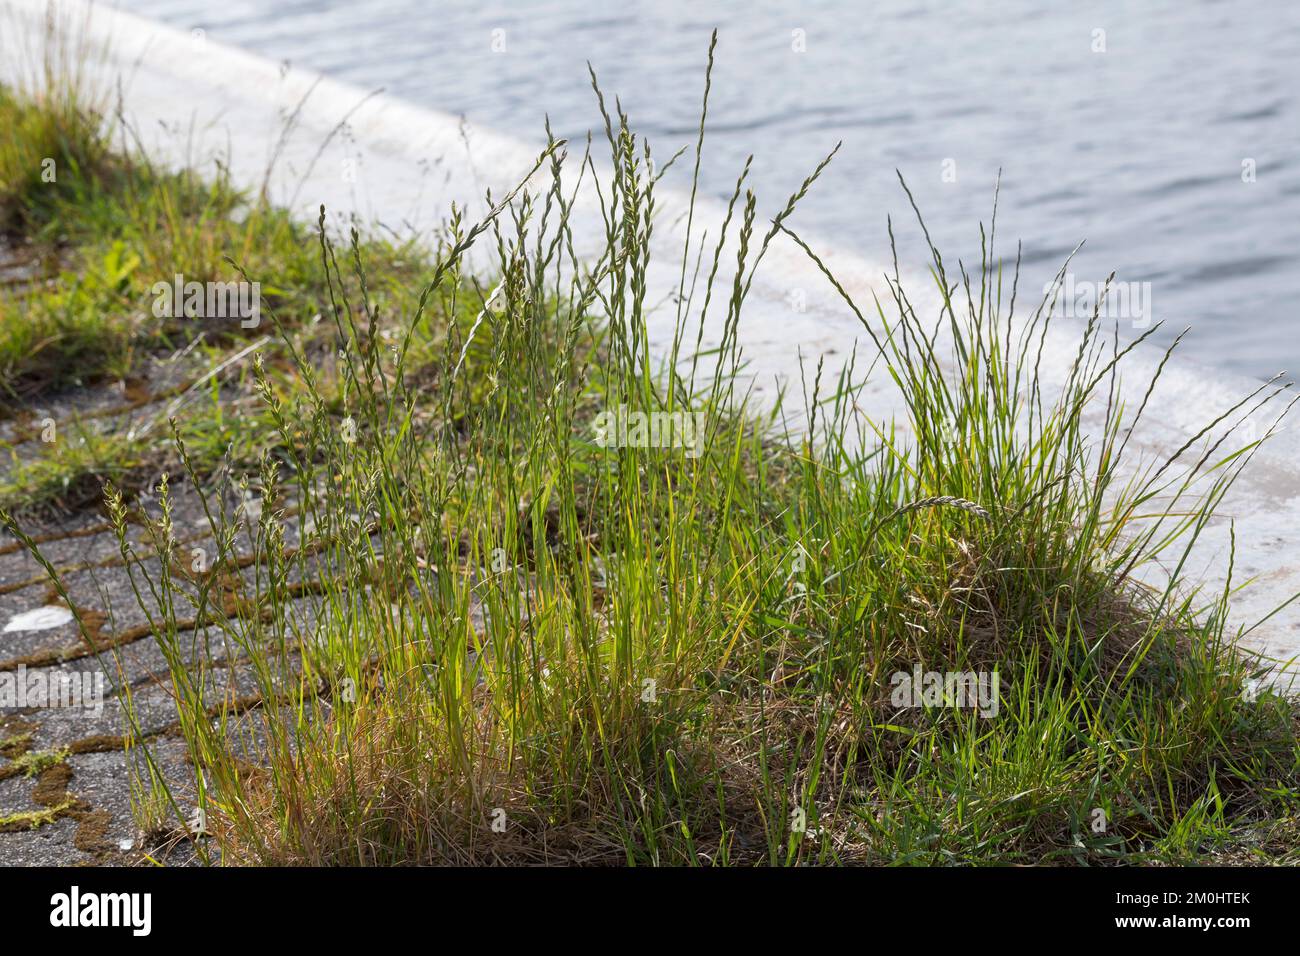 Deutsches Weidelgras, in Pflasterfugen, Lolium perenne, perennial rye-grass, English ryegrass, winter ryegrass, Le ray-grass anglais Stock Photo